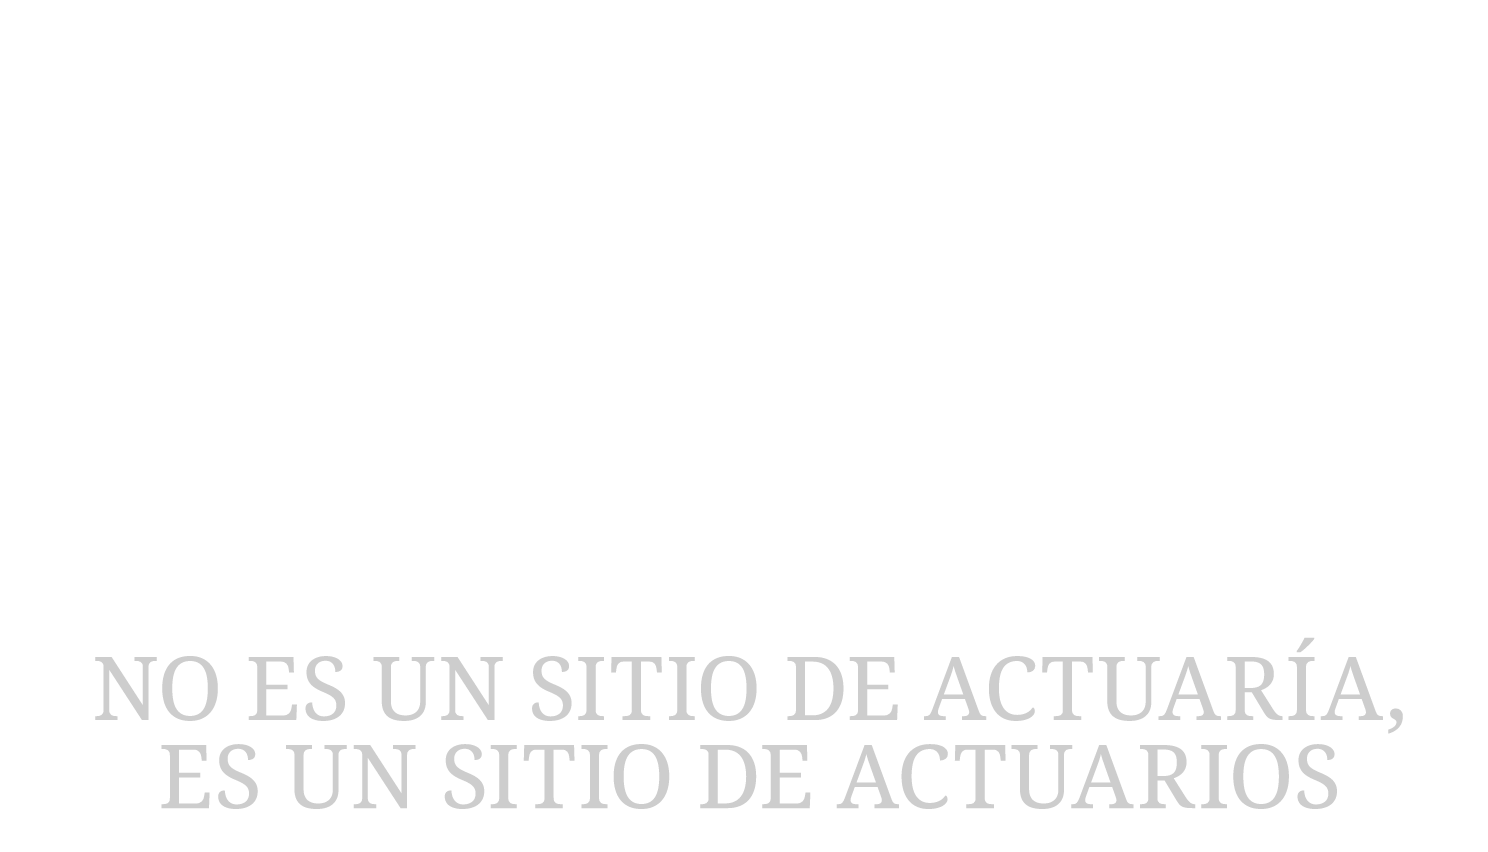 Manual Actuario - No es un blog de actuaría, es un blog de actuarios